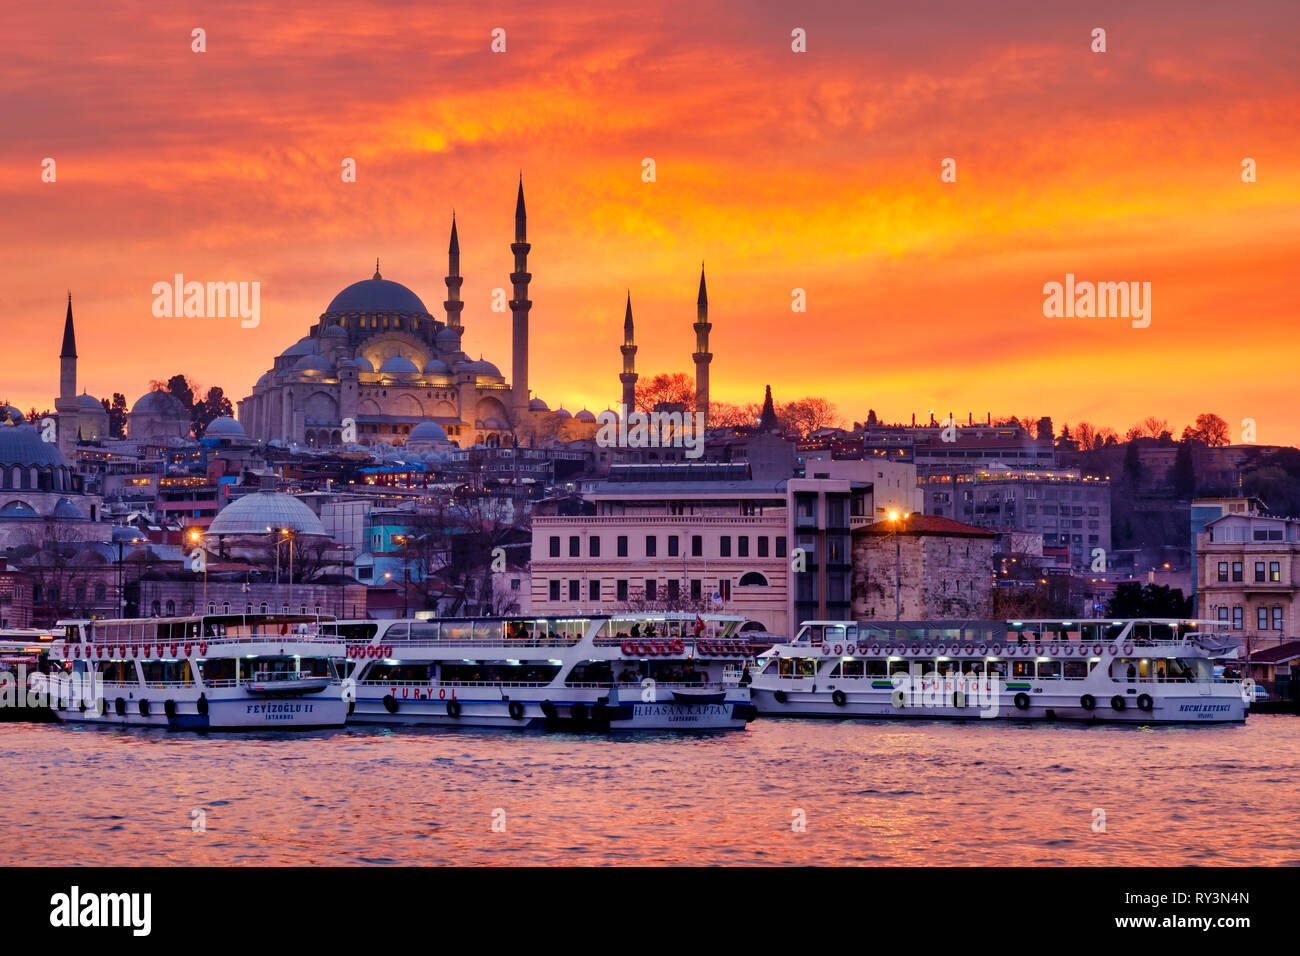 Fatih Bezirk mit der Süleymaniye Moschee und die eminönü Square, Istanbul, Türkei Stockfoto